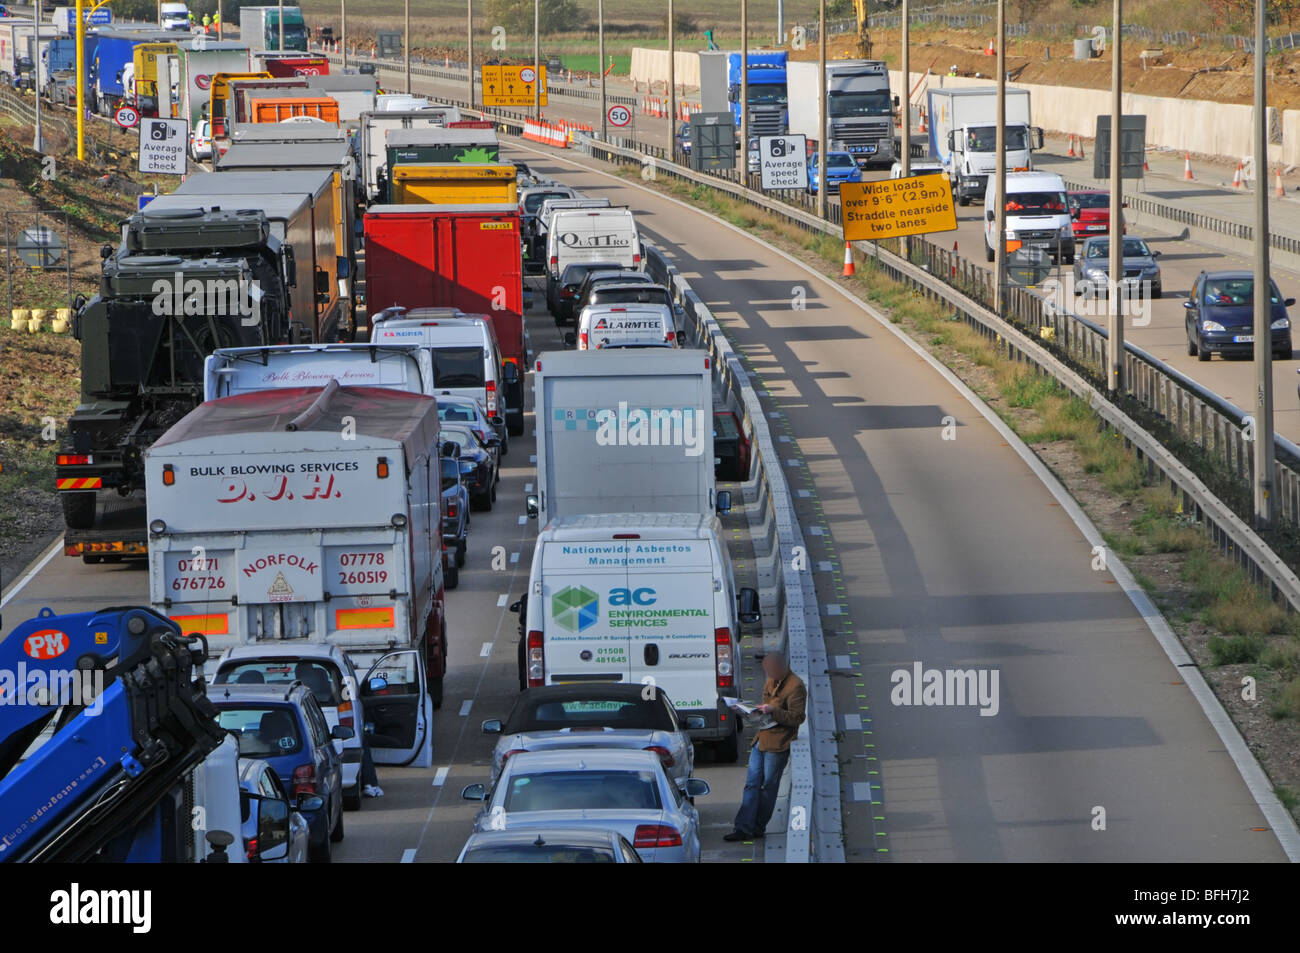 Autofahrer aus Fahrzeugen festgefahrene M25 Autobahn Baustellen Sektion Verkehr geschlossen wegen Unfall verdeckt Gesichter & Zahlen Stockfoto